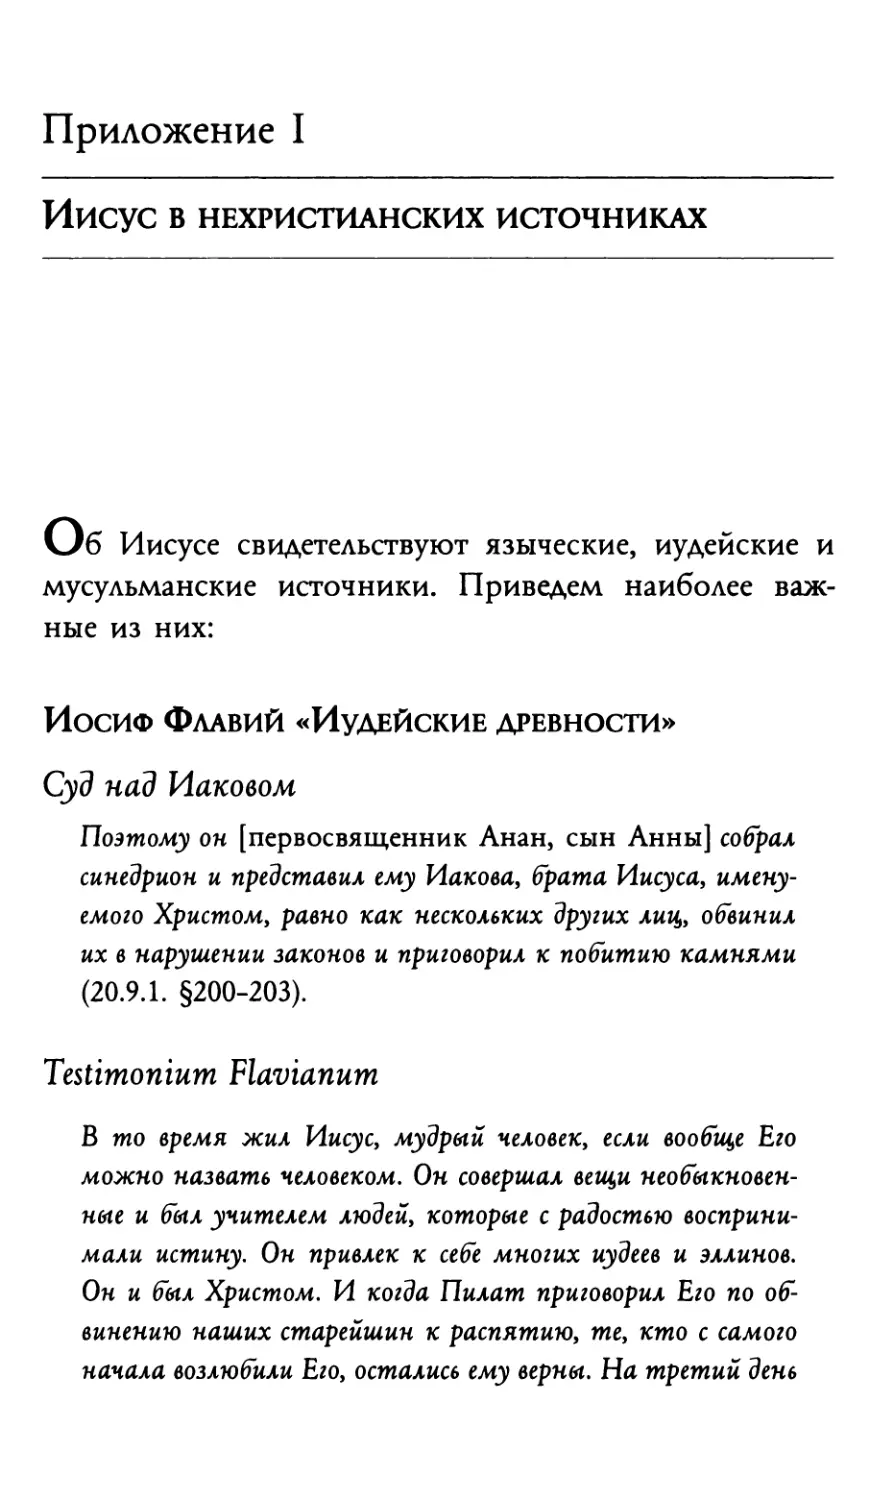 Приложения к русскому изданию